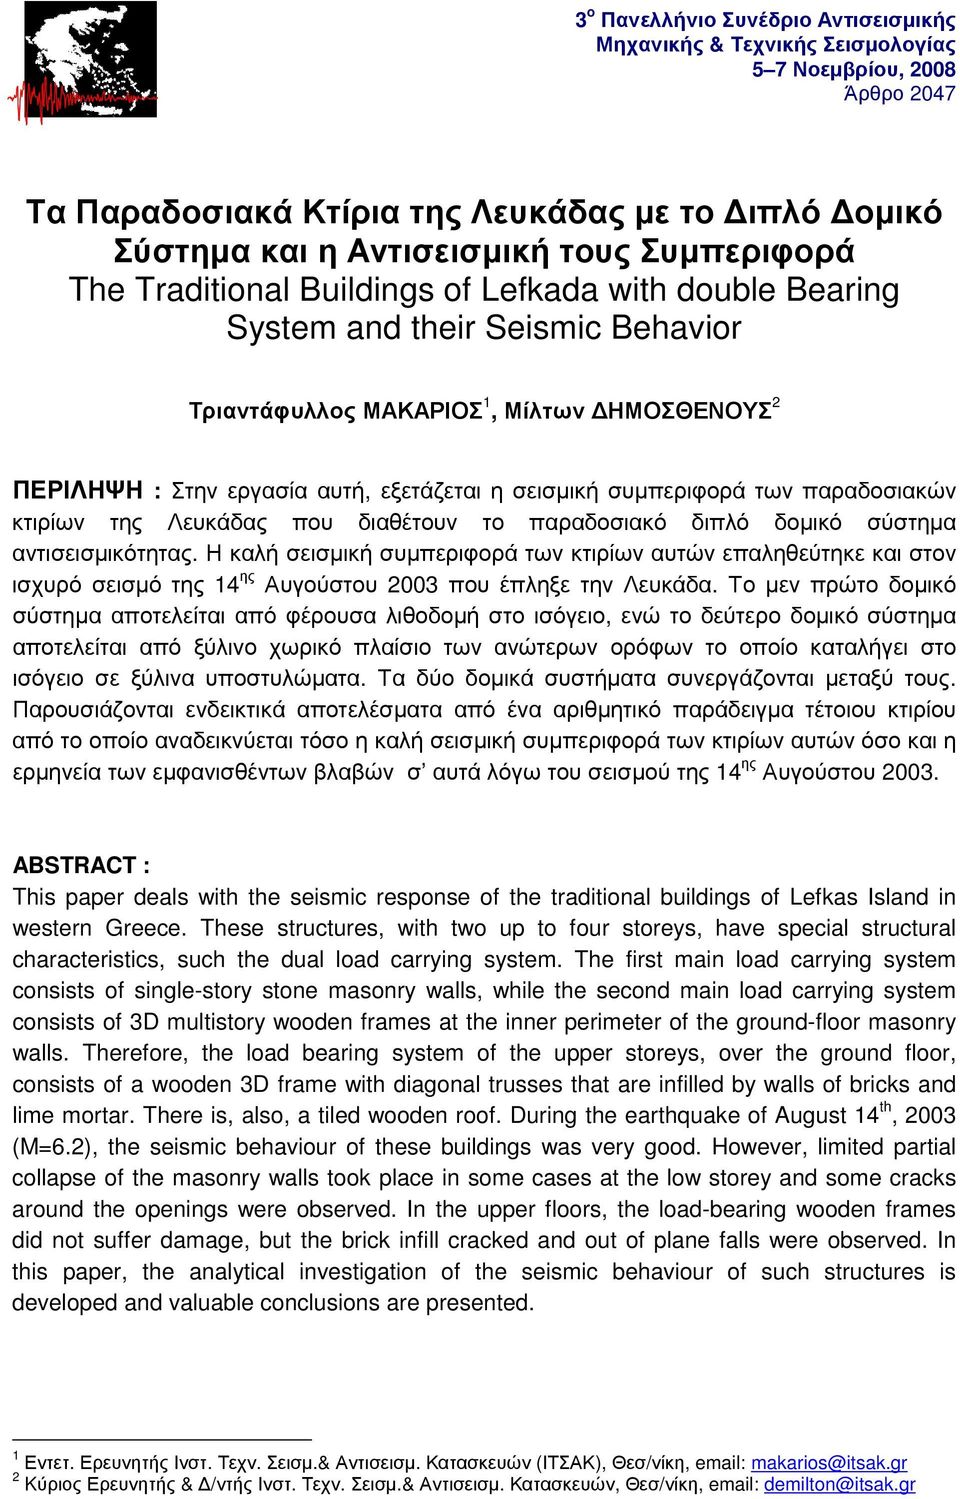 σεισμική συμπεριφορά των παραδοσιακών κτιρίων της Λευκάδας που διαθέτουν το παραδοσιακό διπλό δομικό σύστημα αντισεισμικότητας.